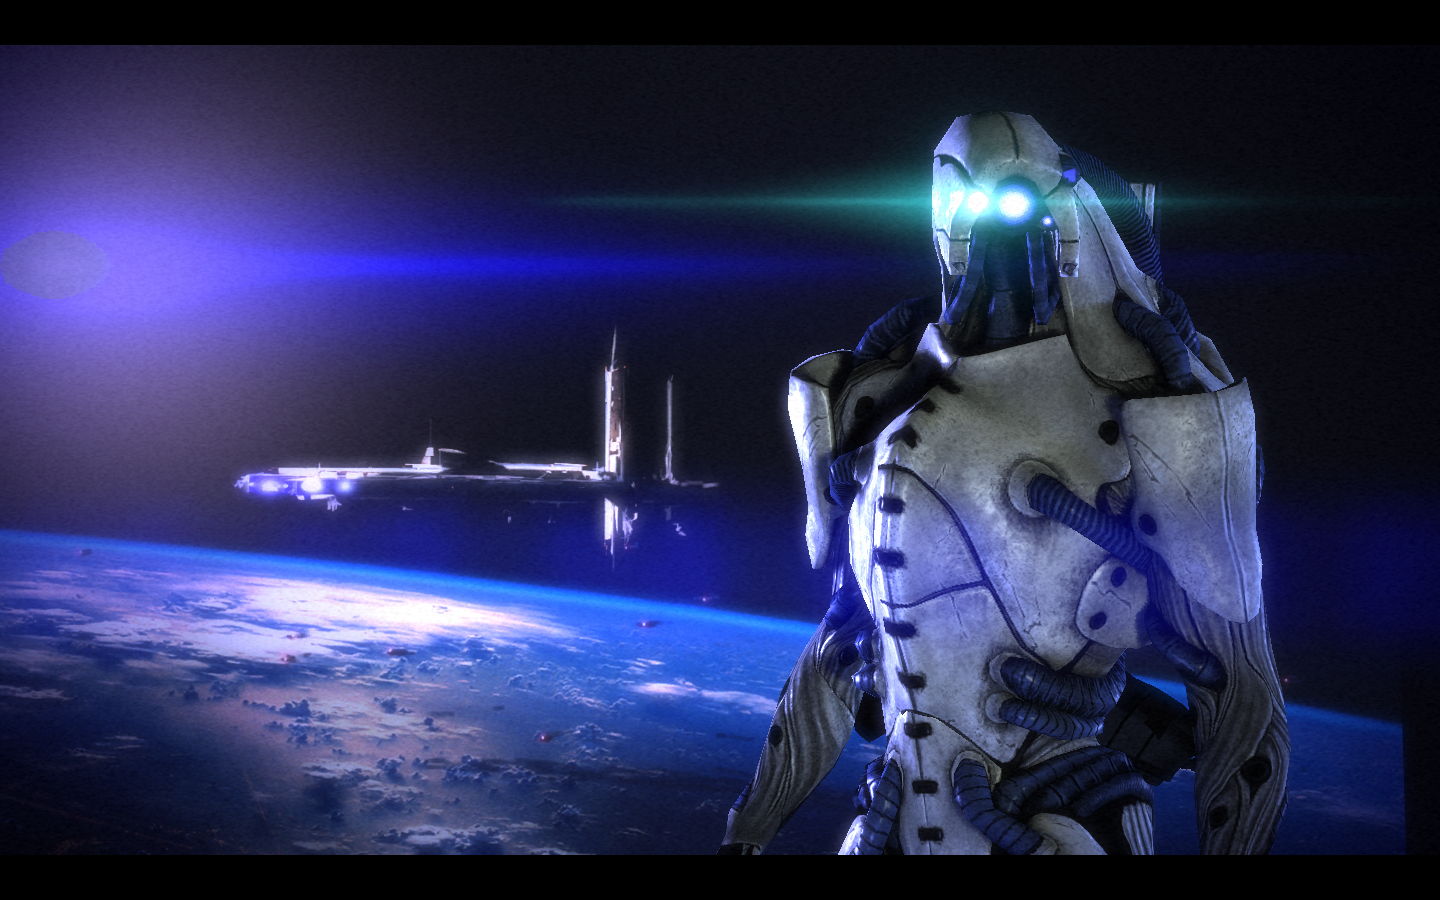 Mass Effect 3 Wallpaper 2 by C12ASH on DeviantArt